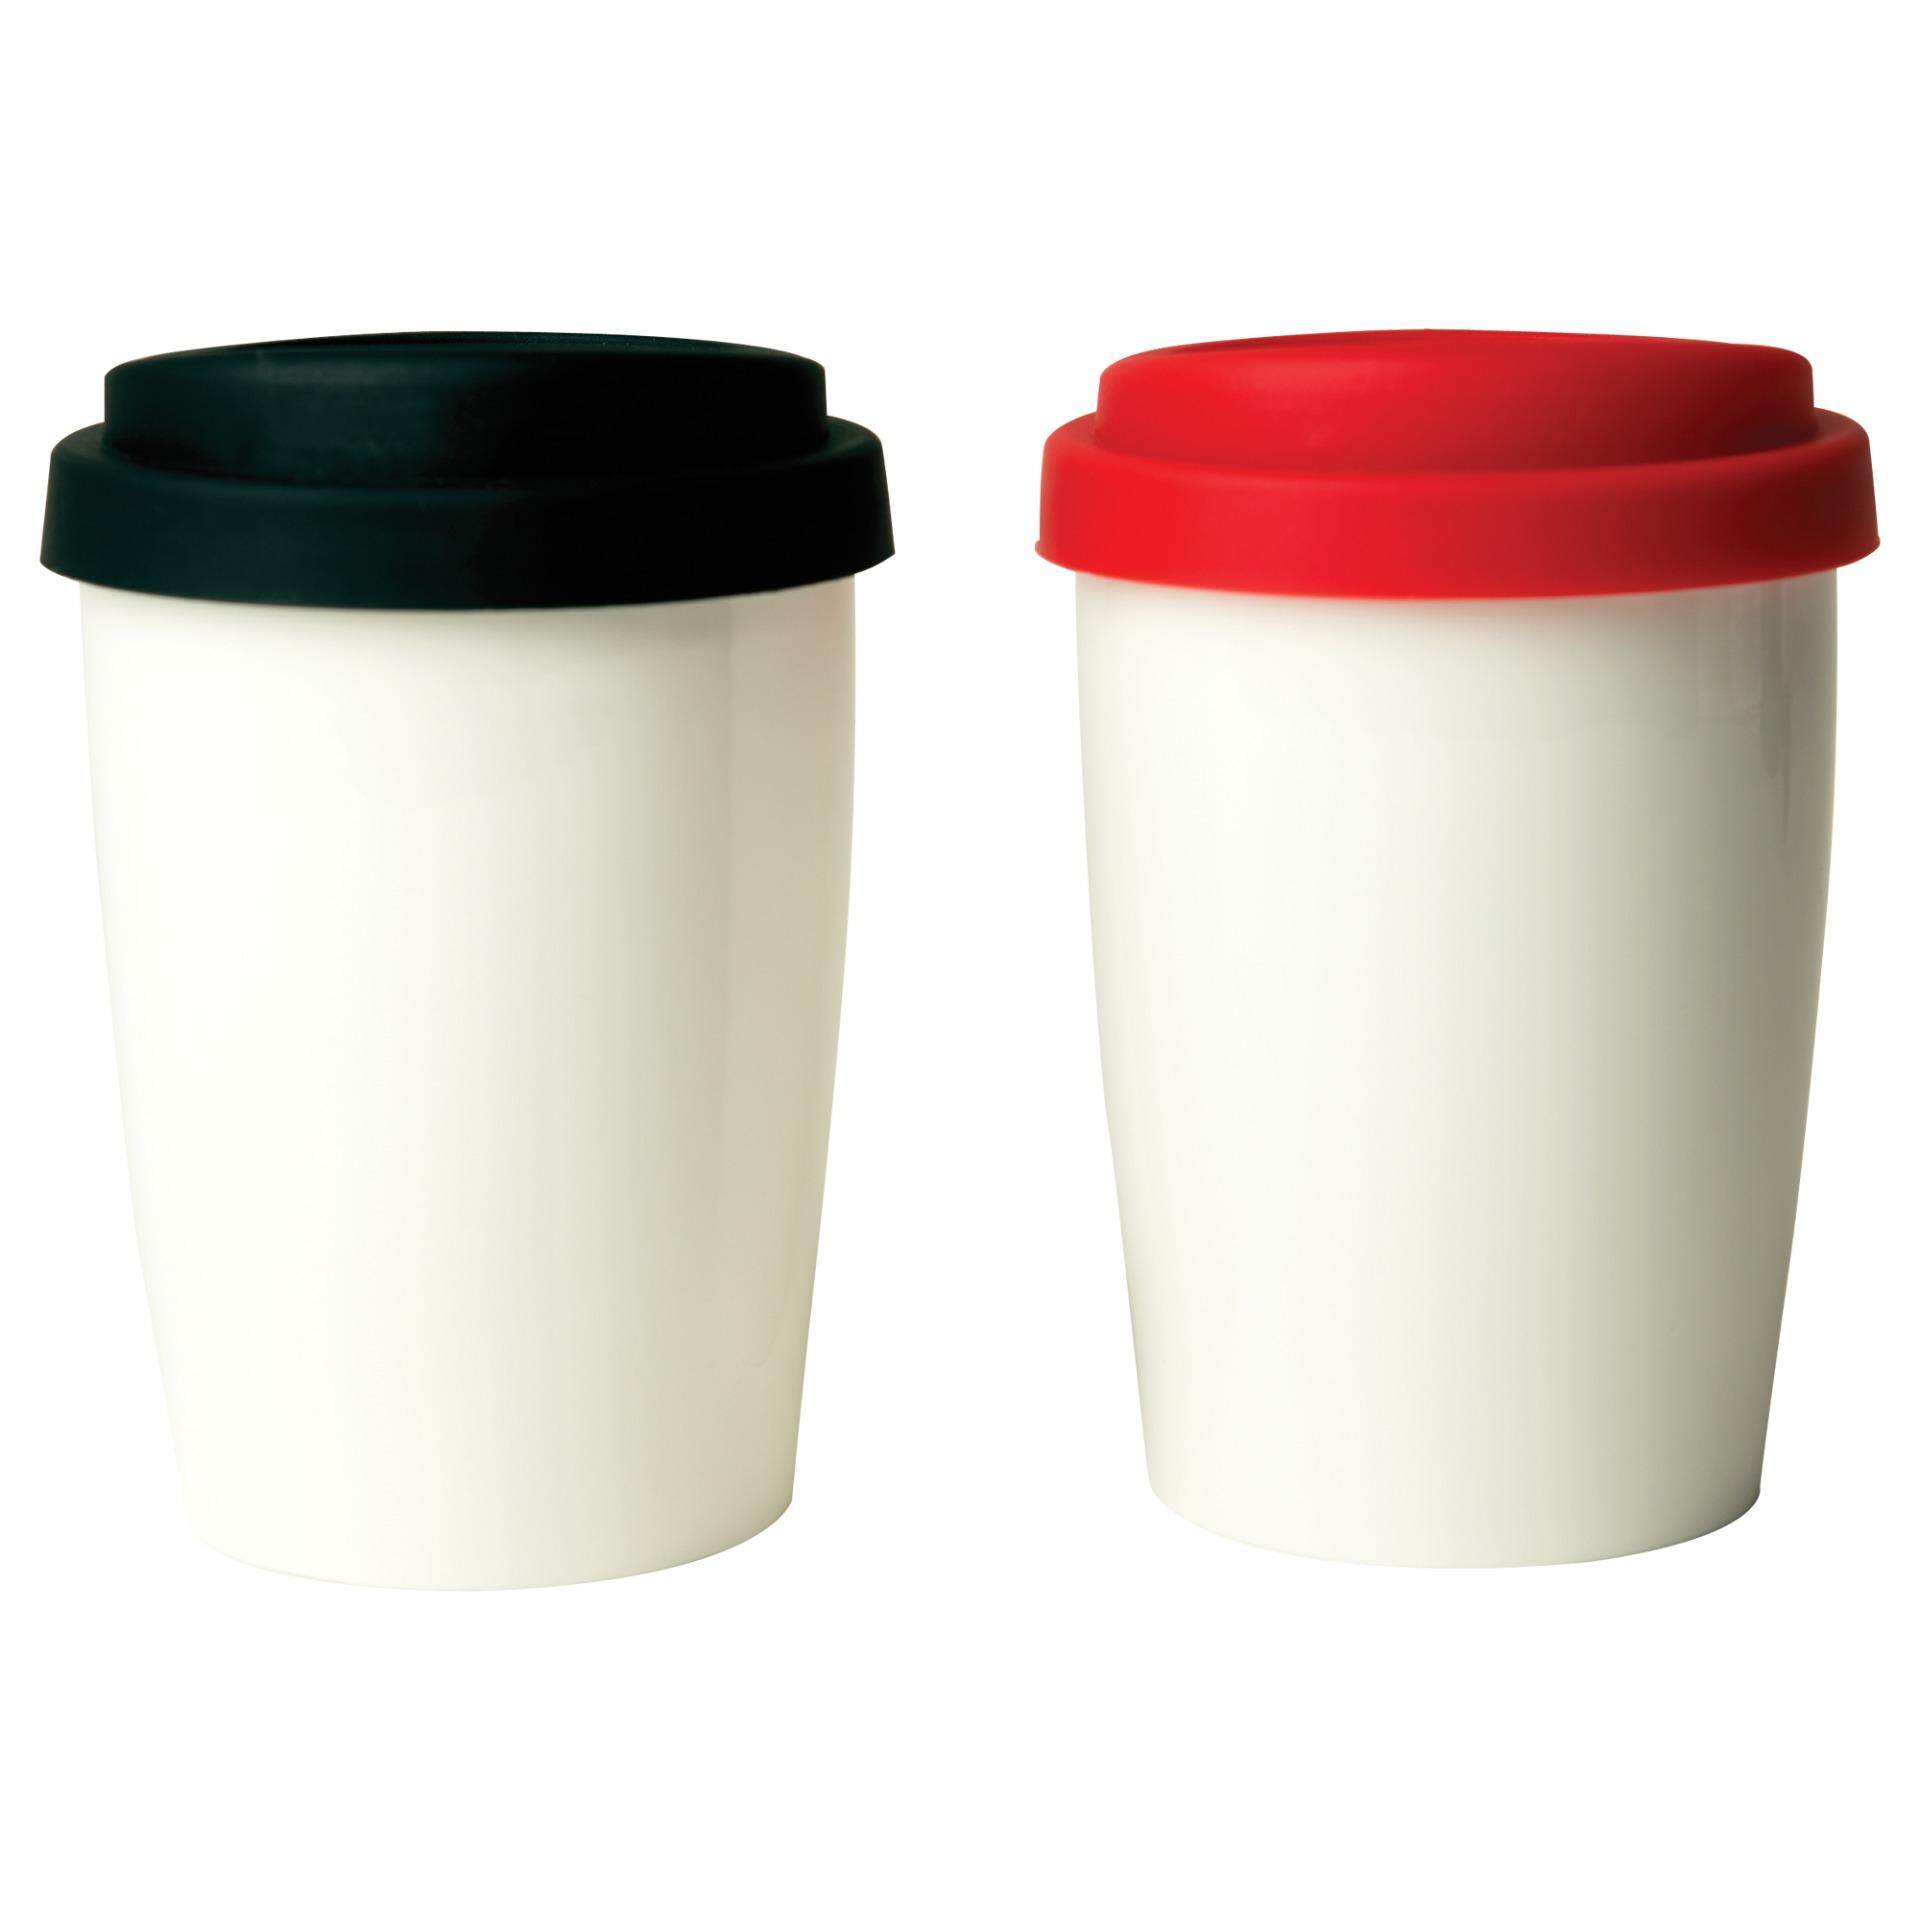 แก้วเซรามิค แก้วกาแฟ แก้วชา ผนังสองชั้น รักษาอุณหภูมิ จับไม่ร้อนมือ By Scanproducts Double Wall 2 Thermo mug 28cl=2 ใบ